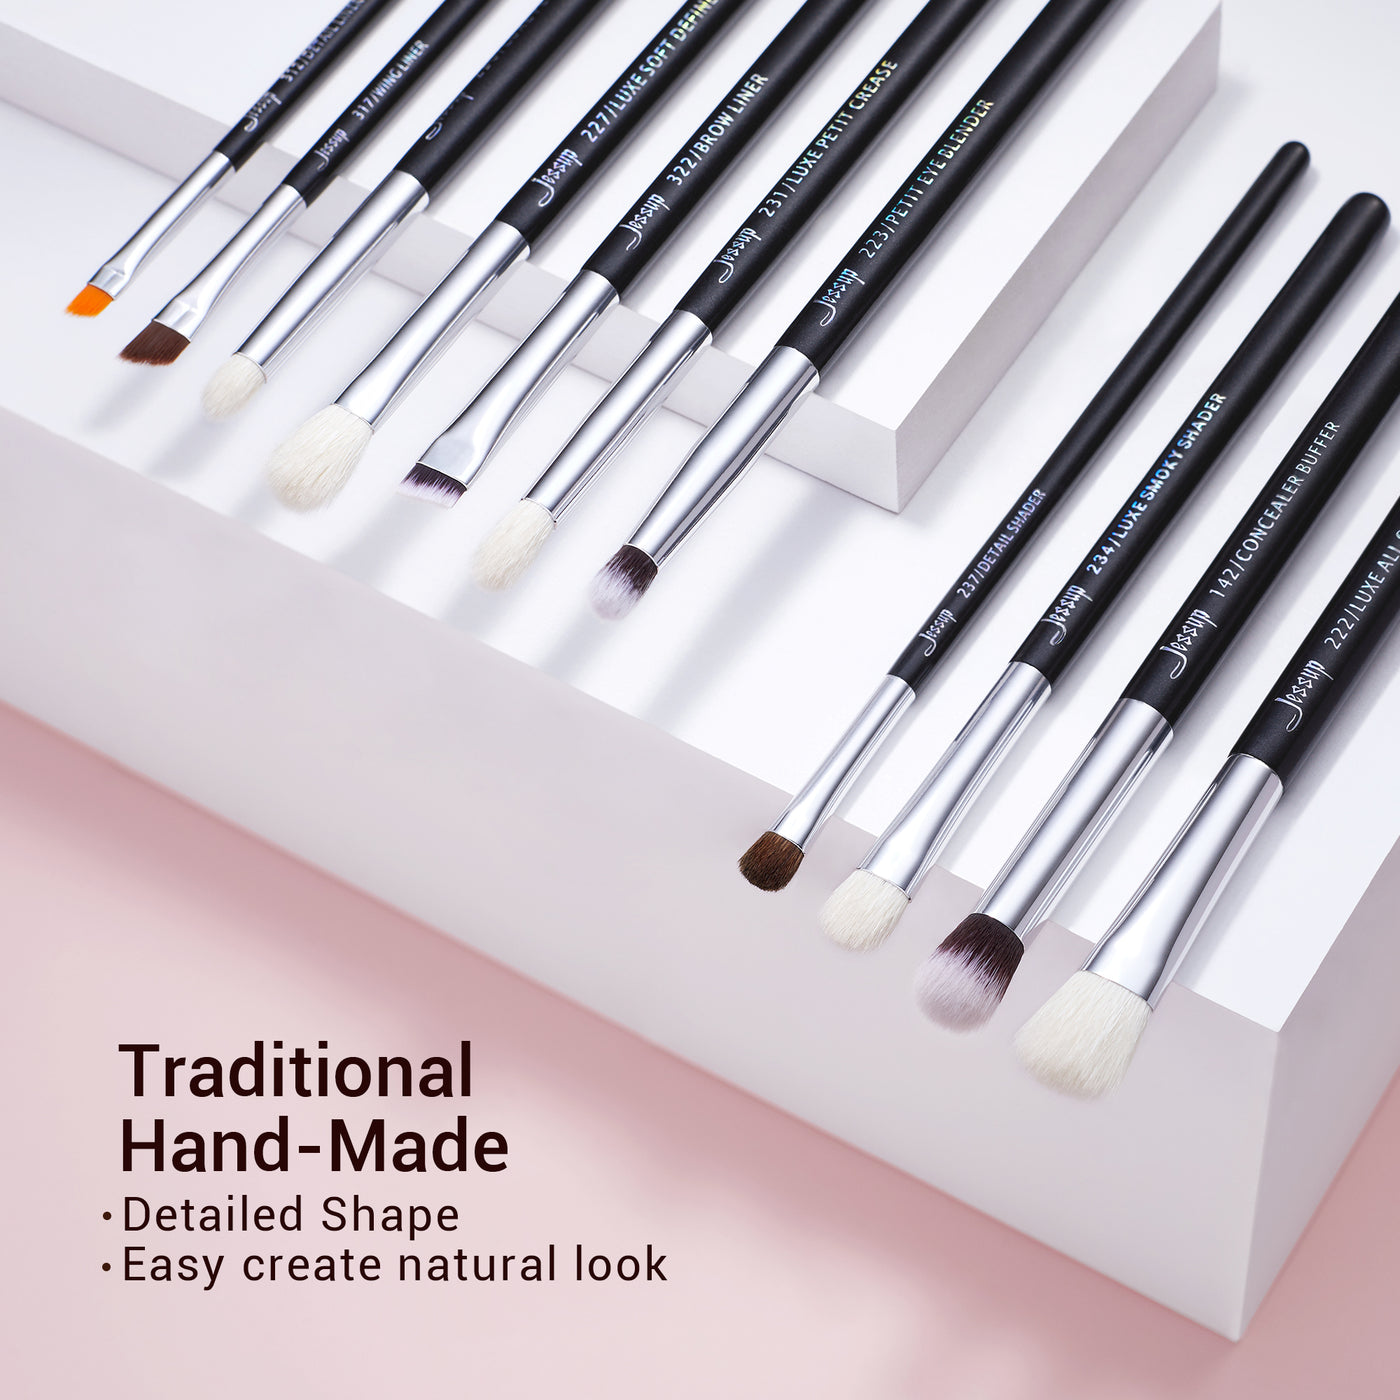 eye makeup brush kit black 15pcs - Jessup Beauty UK